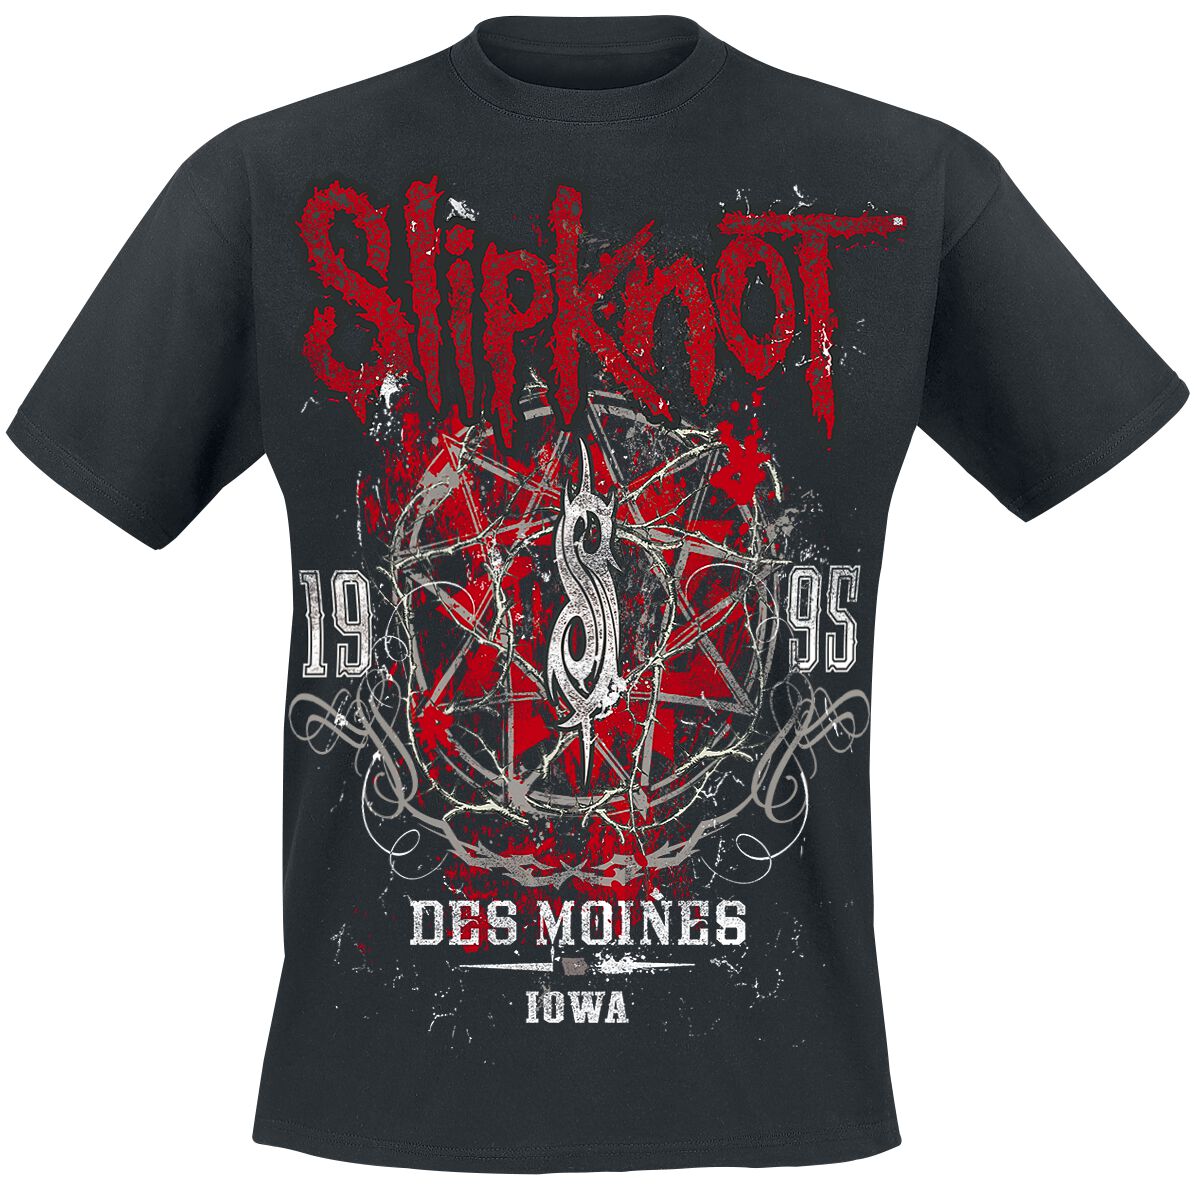 Slipknot T-Shirt - Iowa Star - S bis 5XL - für Männer - Größe XL - schwarz  - Lizenziertes Merchandise!